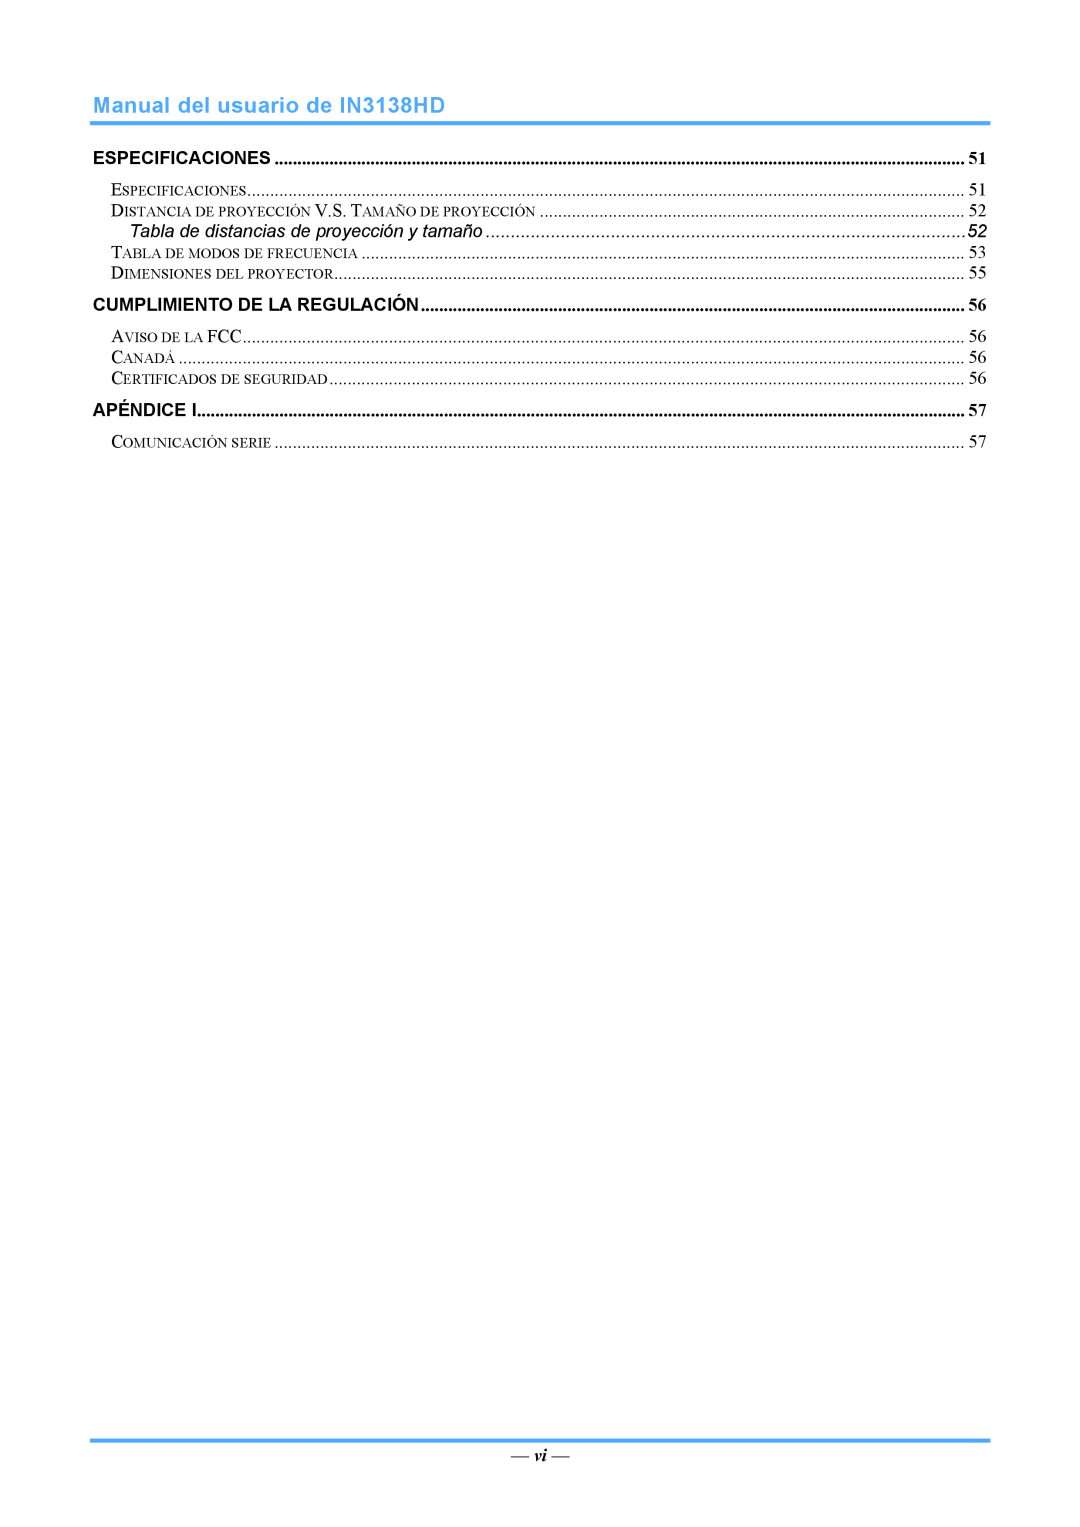 InFocus 3534324301 manual Manual del usuario de IN3138HD, Especificaciones, Cumplimiento De La Regulación, Apéndice 